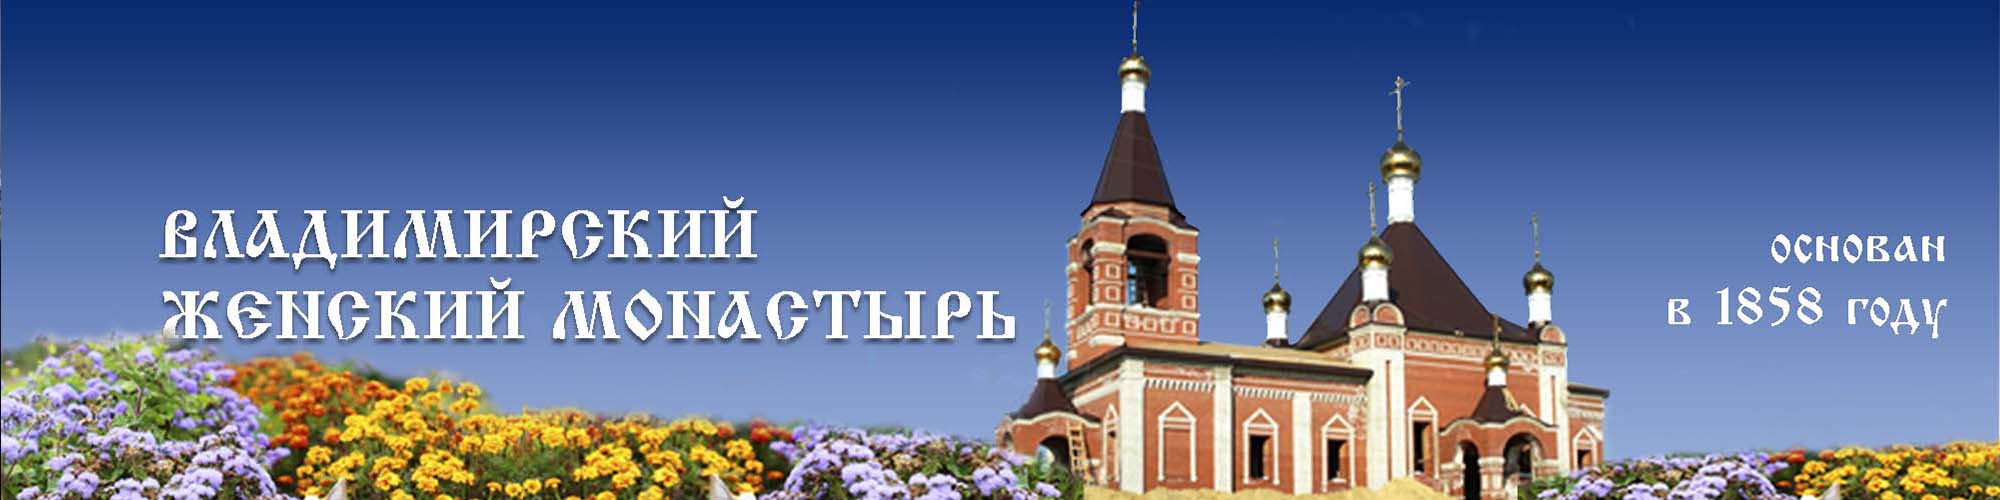 Владимирский монастырь всегда был духовным центром